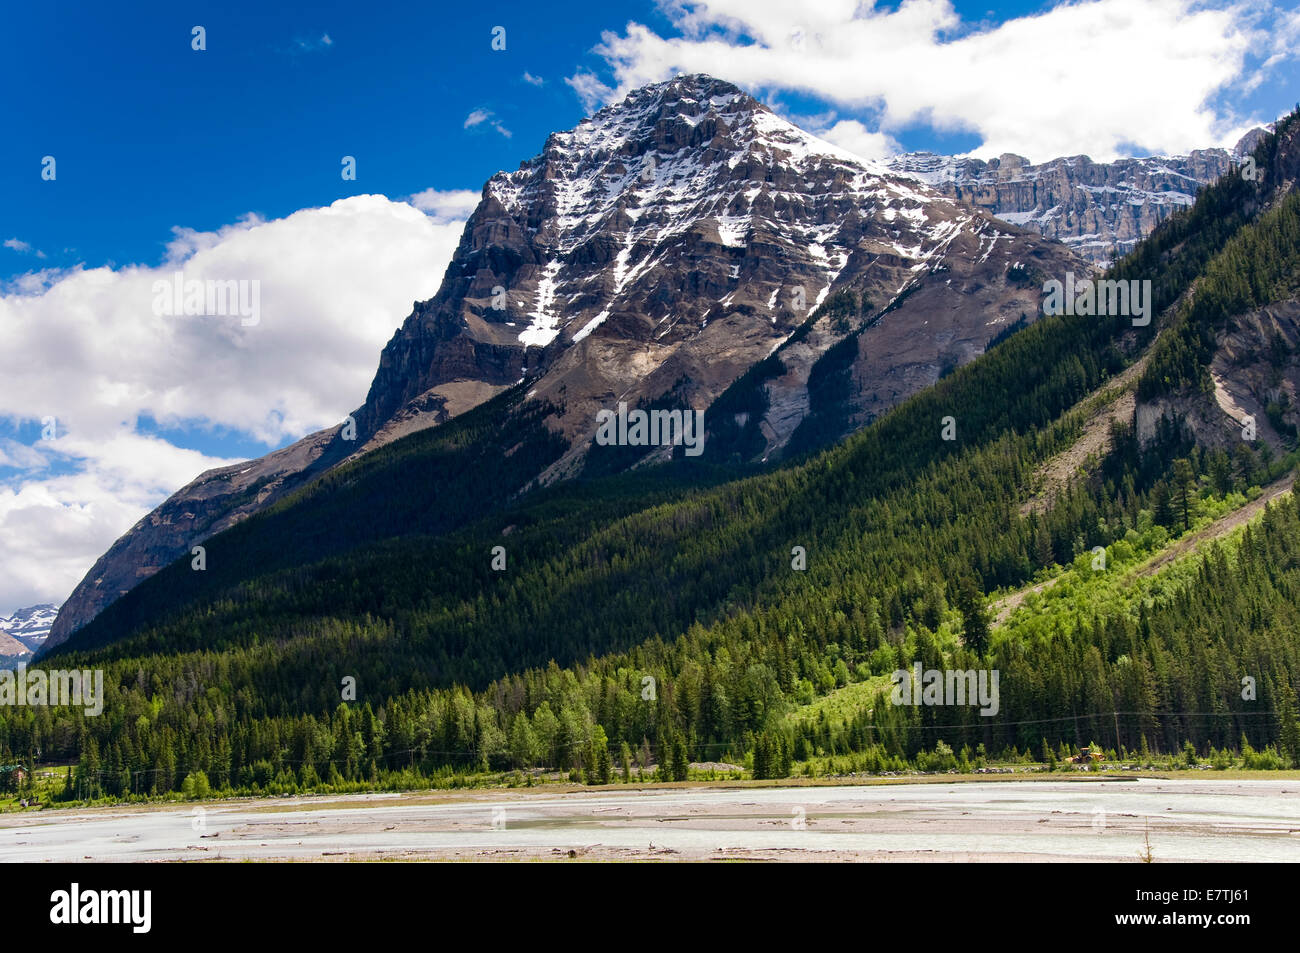 Les montagnes Rocheuses, le champ, le parc national Yoho, Colombie-Britannique, Canada Banque D'Images